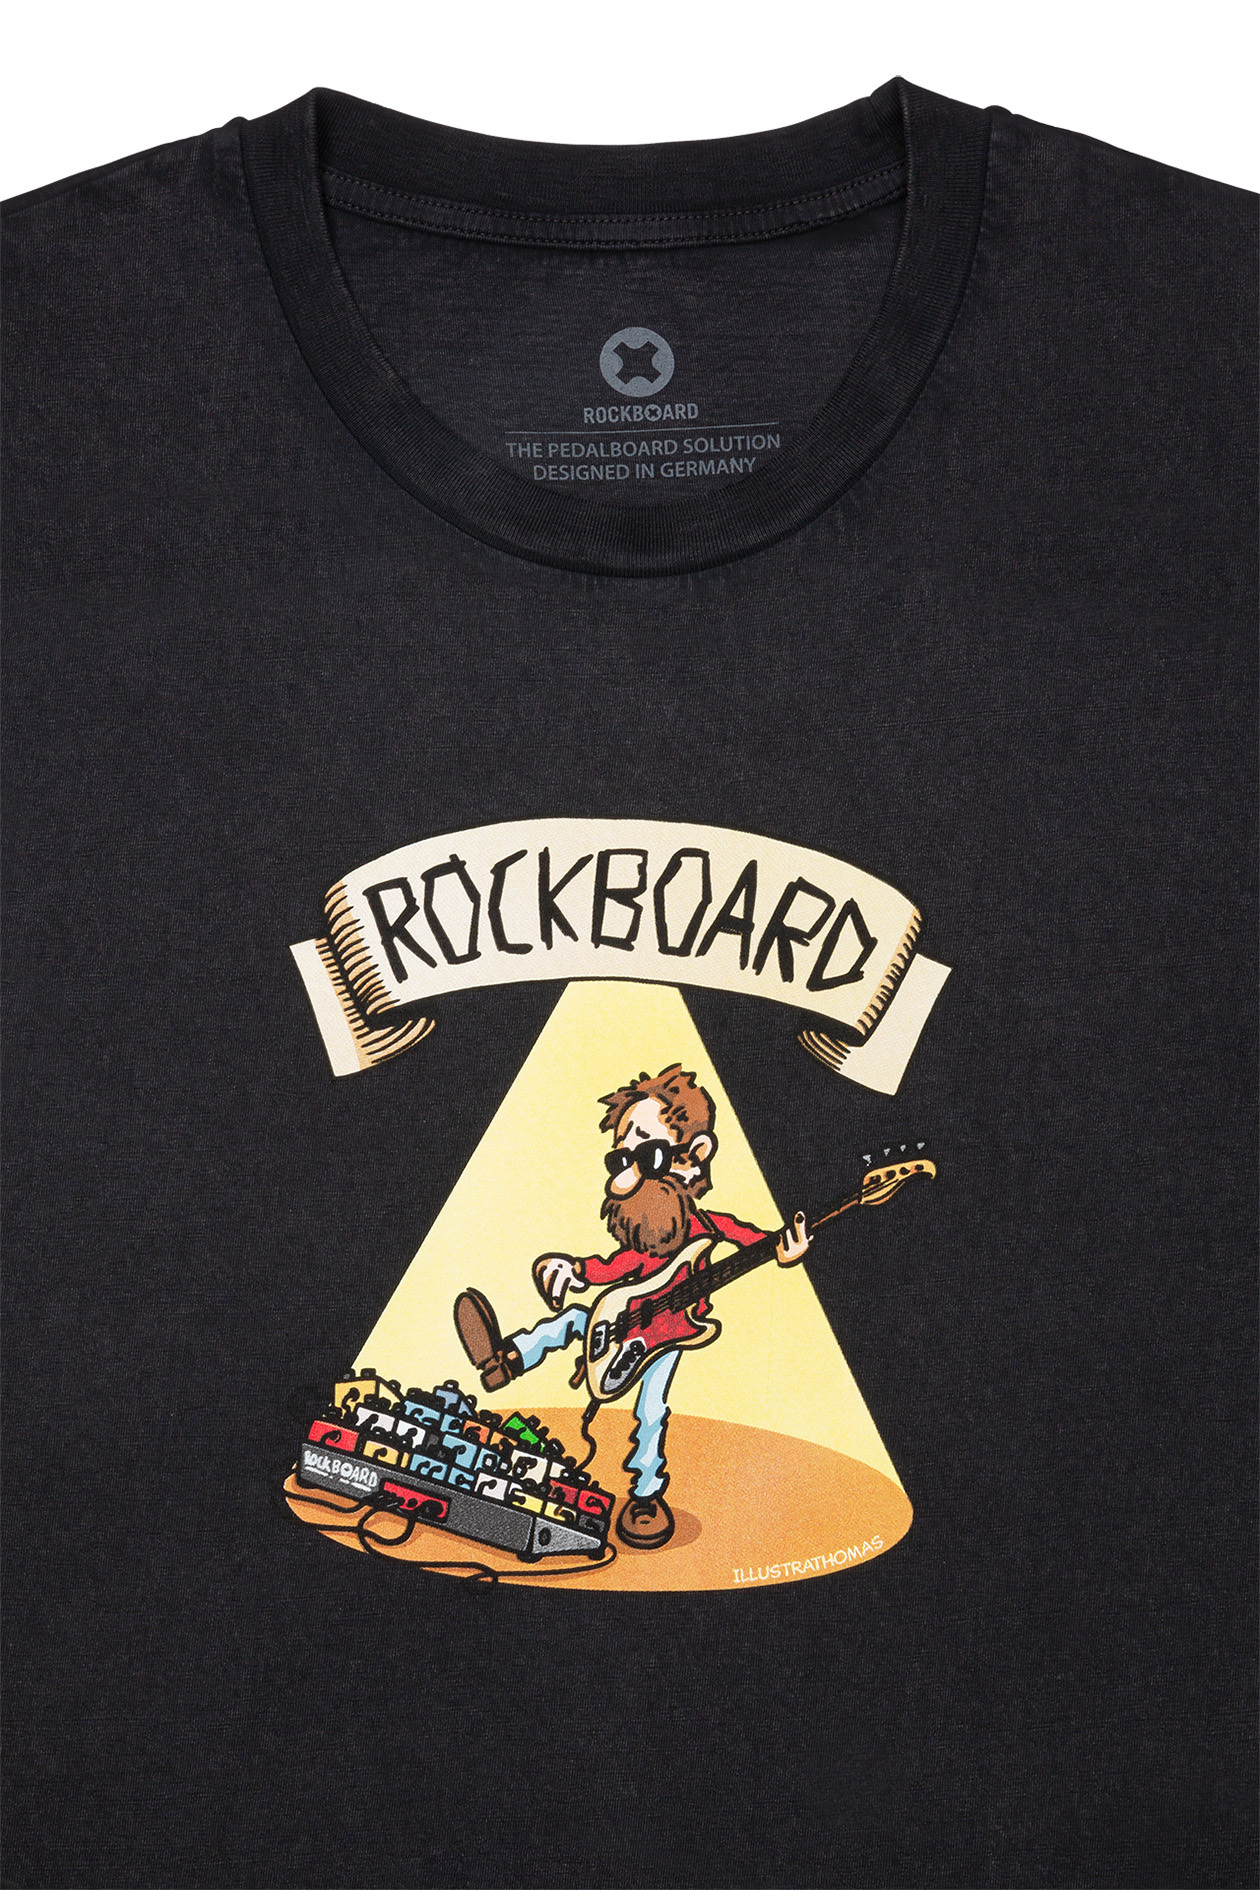 RockBoard - Black - Size S